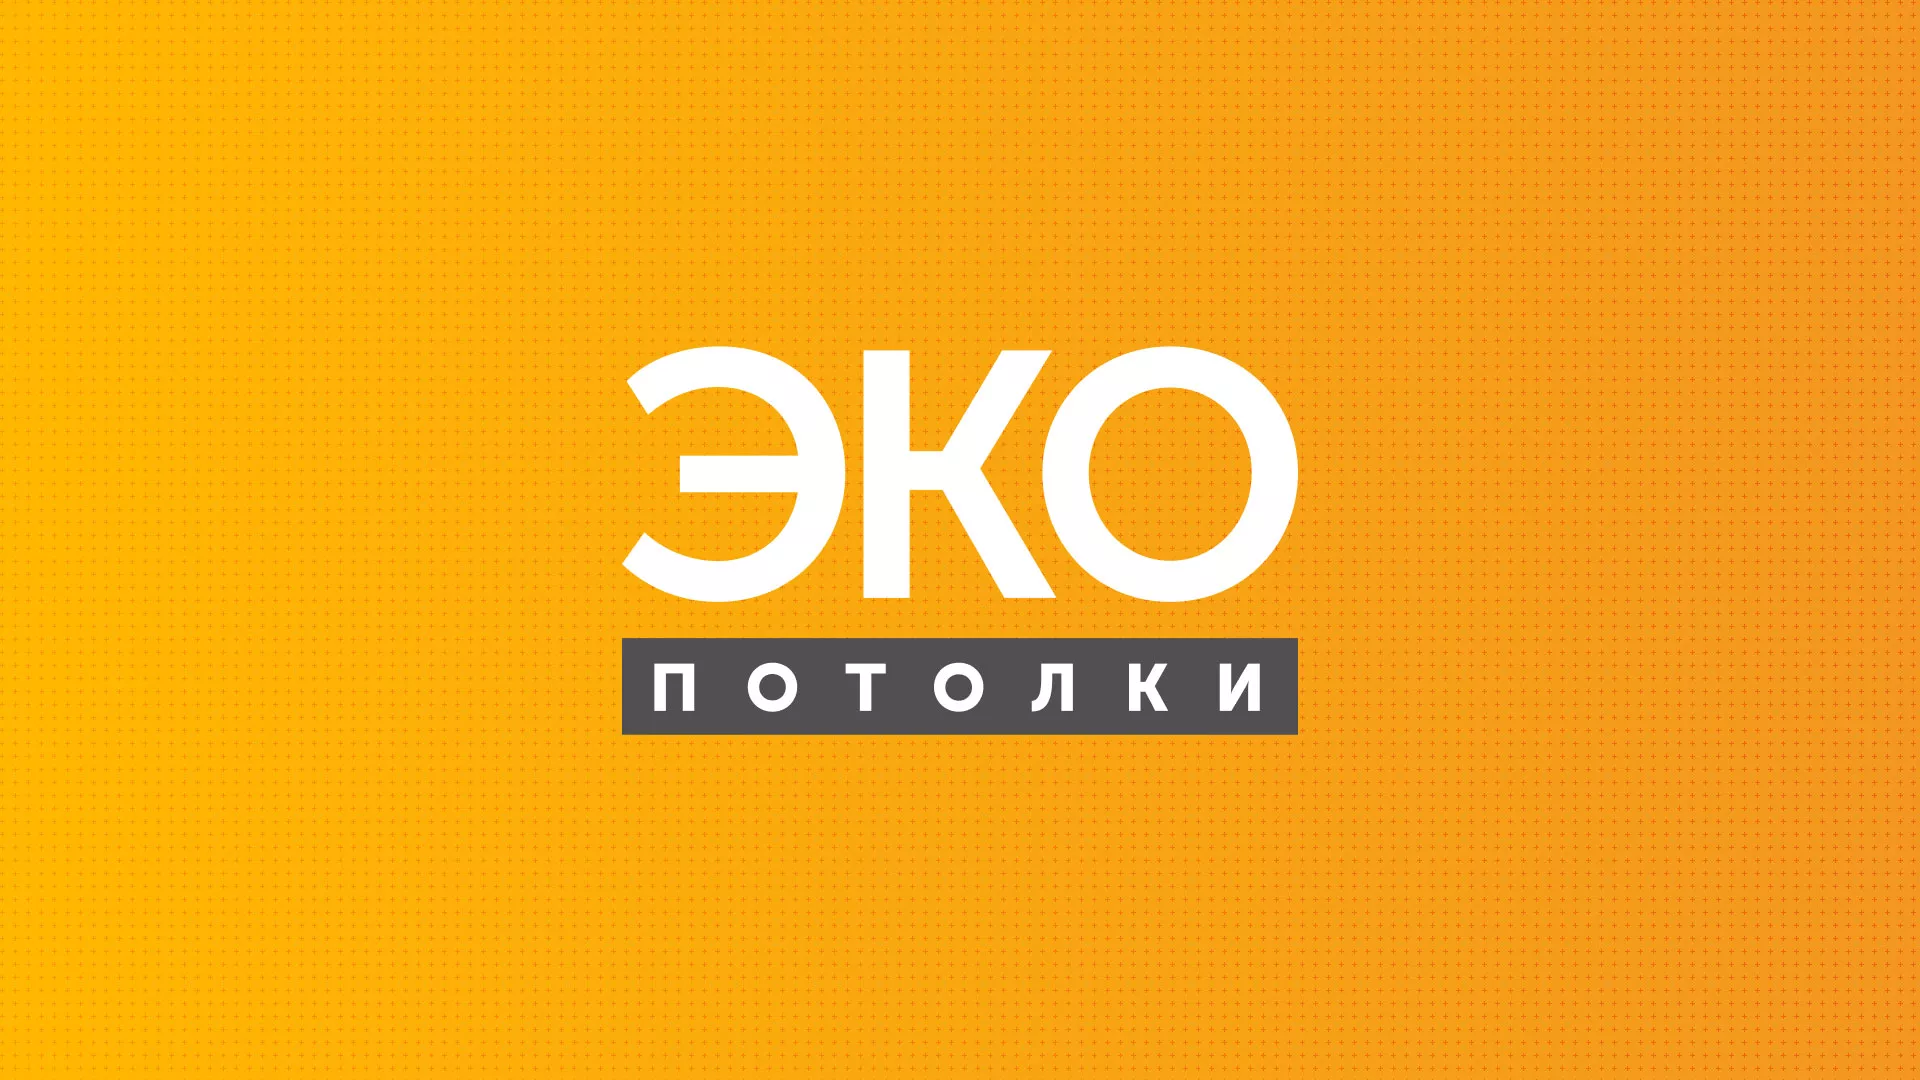 Разработка сайта по натяжным потолкам «Эко Потолки» в Райчихинске